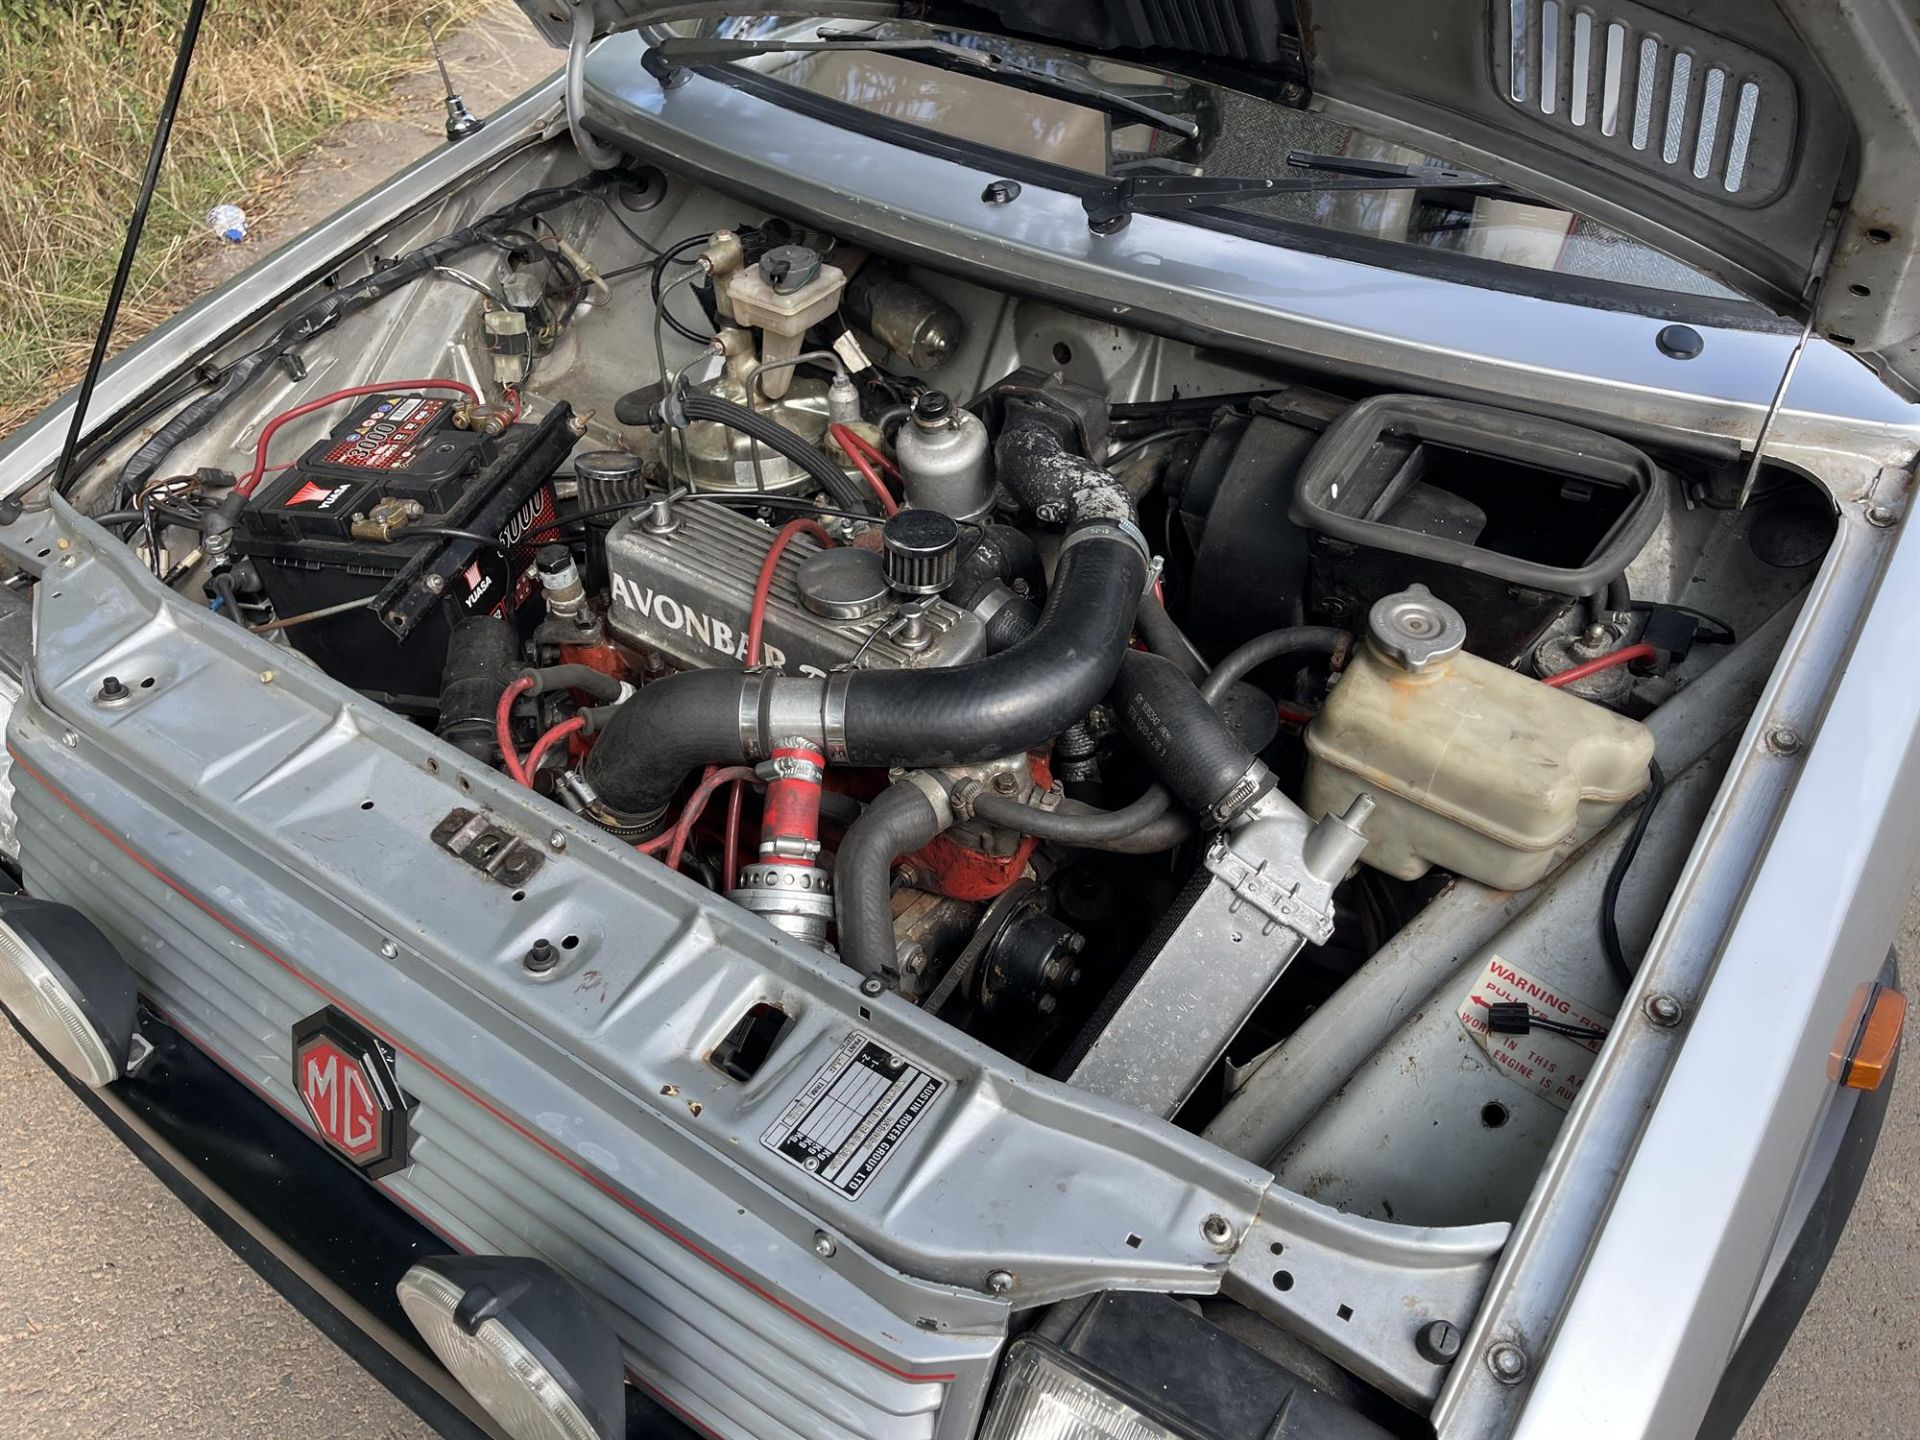 1984 MG Metro Turbo Series 1 - Image 3 of 10